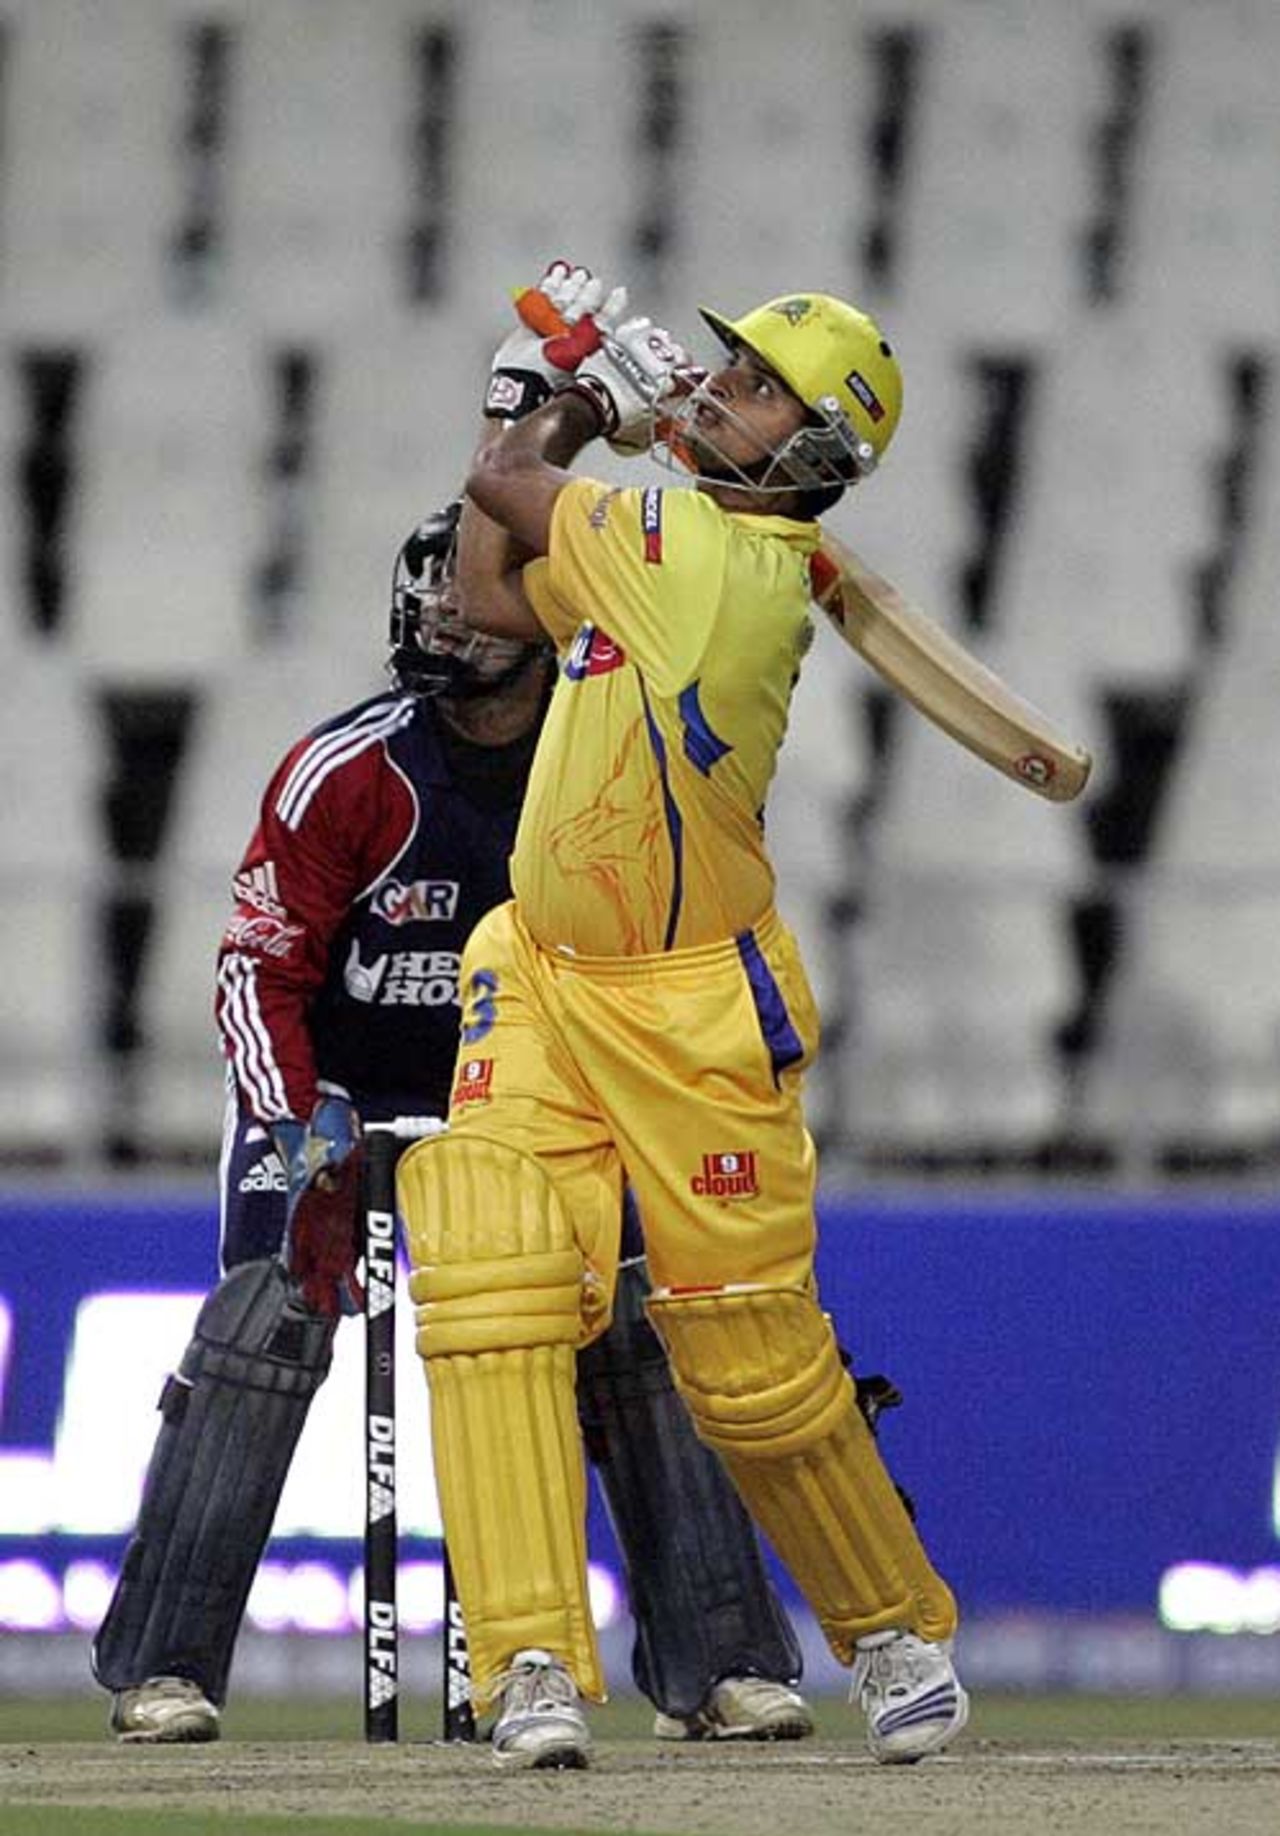 Suresh Raina clubs over the infield, Chennai Super Kings v Delhi Daredevils, IPL, 26th match, Johannesburg, May 2, 2009